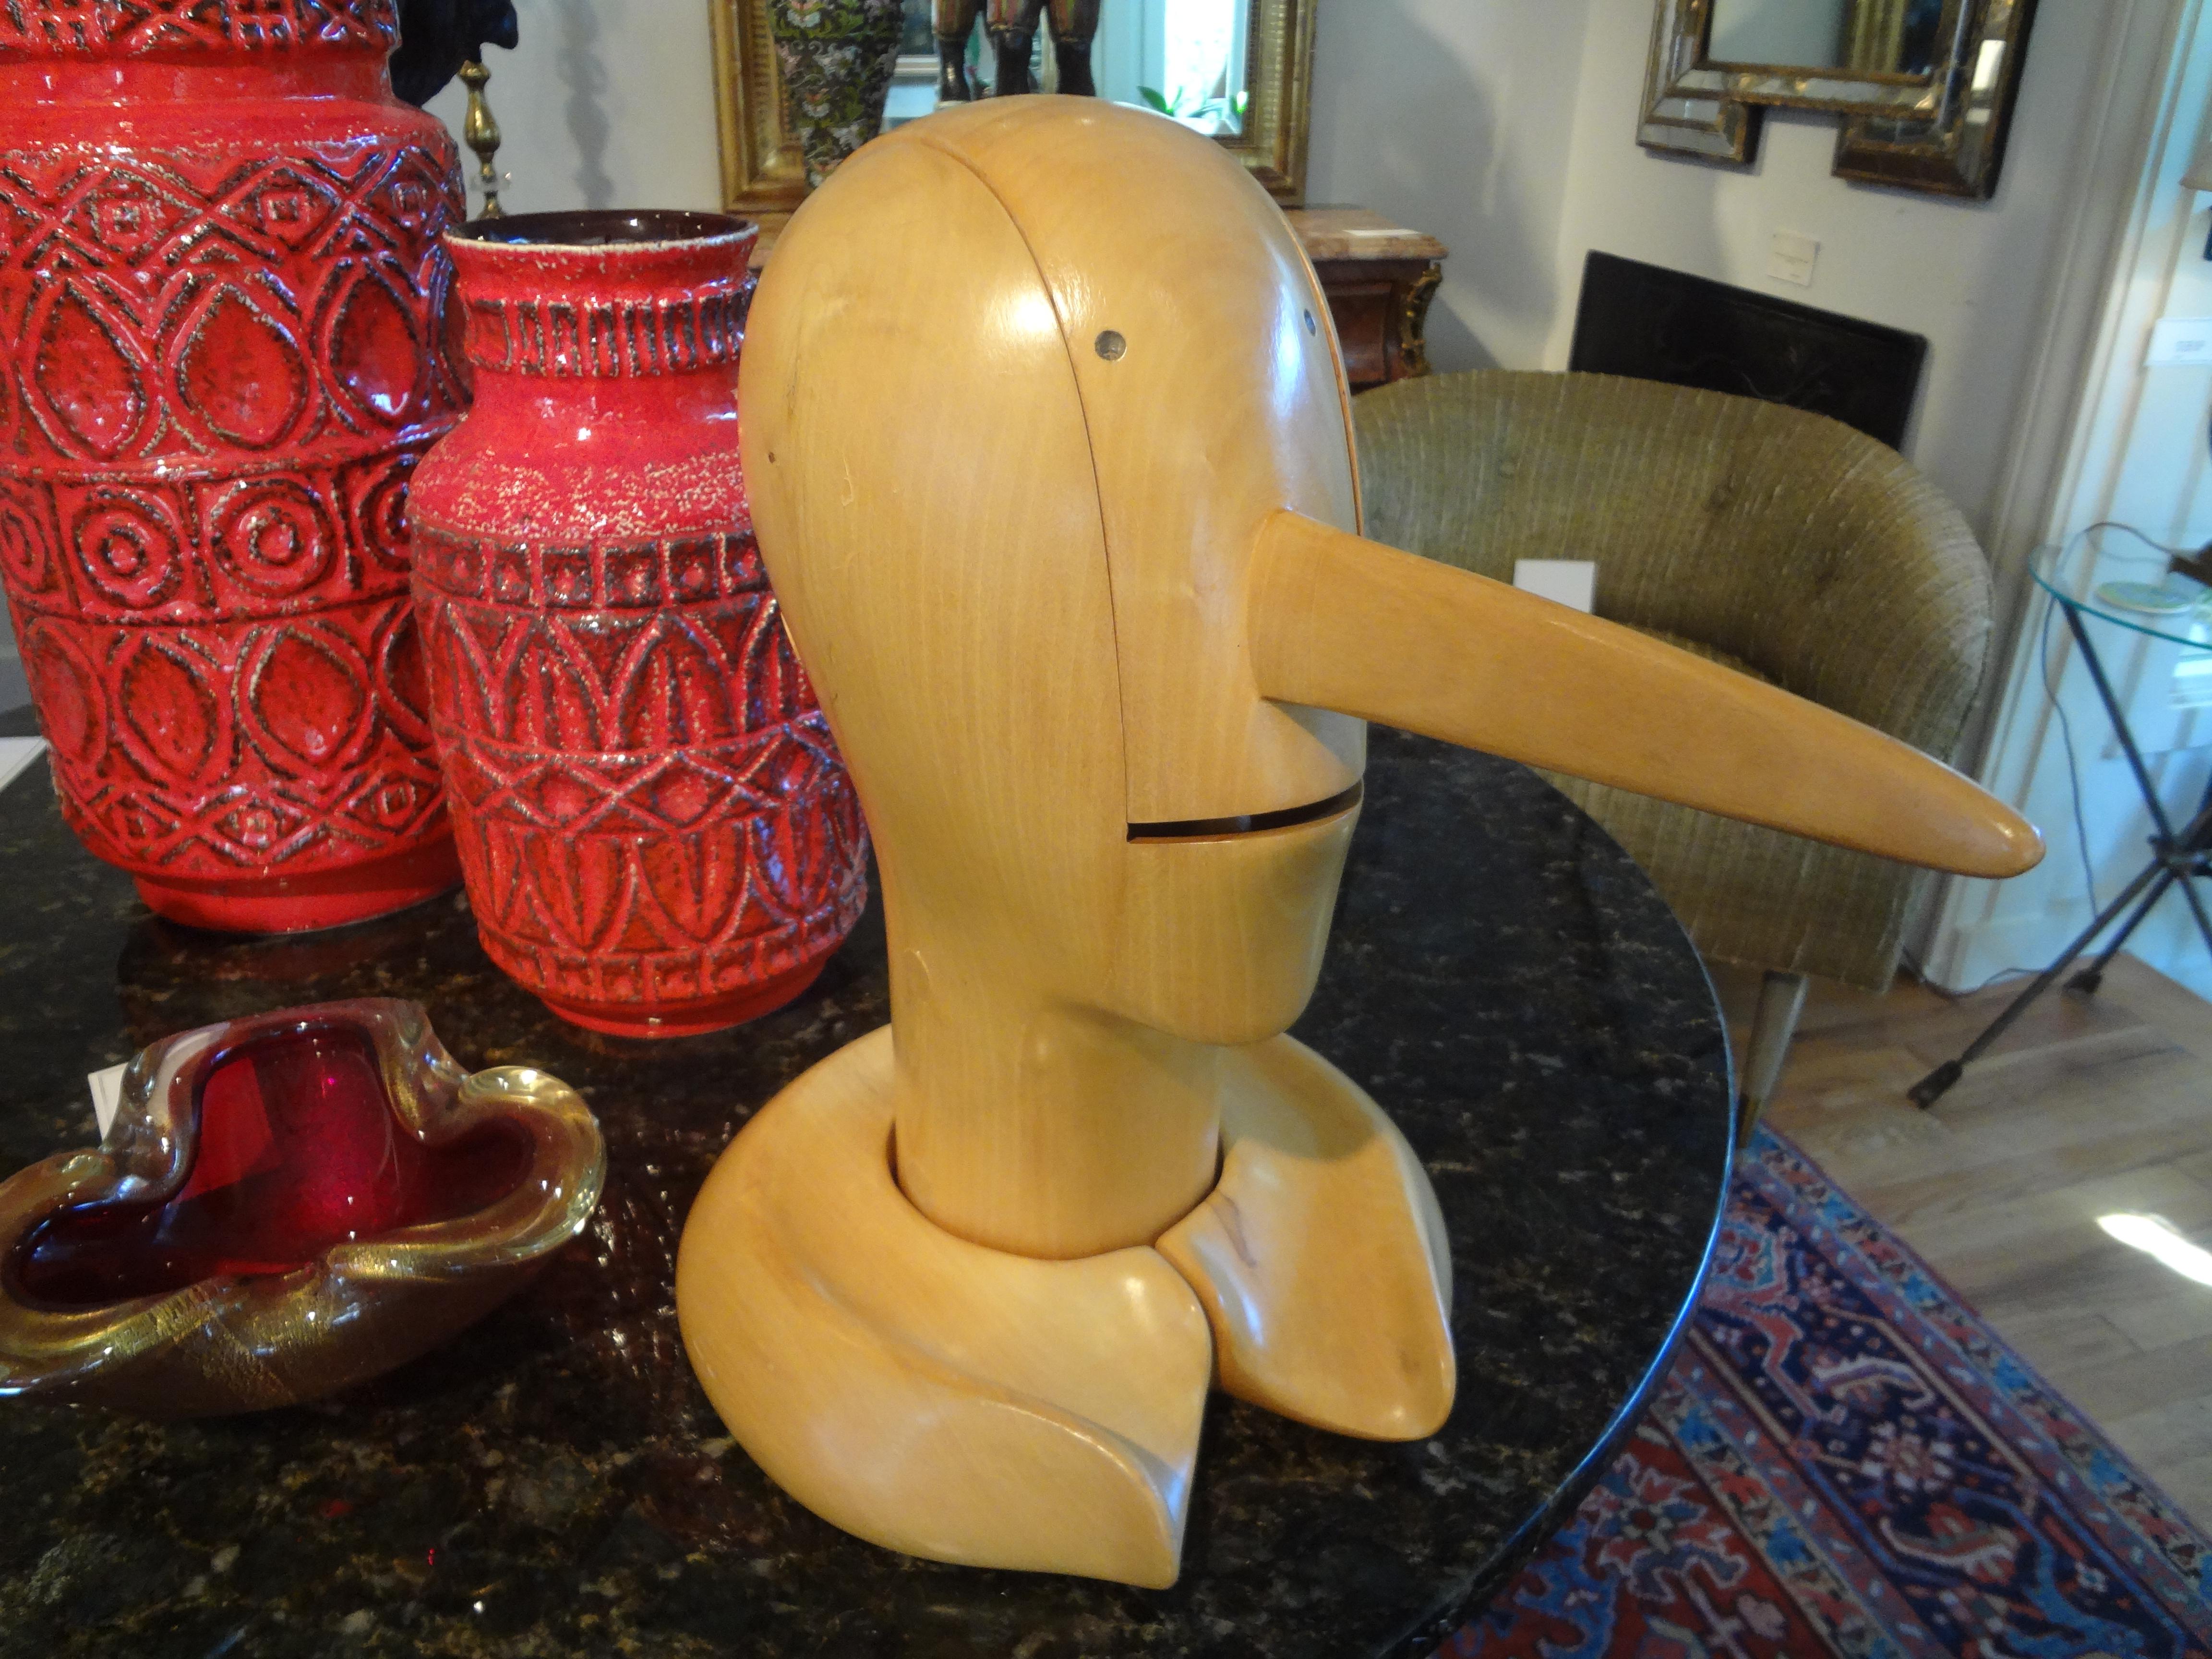 Pinocchio-Skulptur aus geschnitztem Holz im Vintage-Stil.
Charmante Pinocchio-Skulptur aus geschnitztem Holz im Vintage-Stil. Diese interessante Büste von Pinocchio ist gut gemacht und hat einen Mund, der sich öffnet und Zähne zeigt. Diese gut